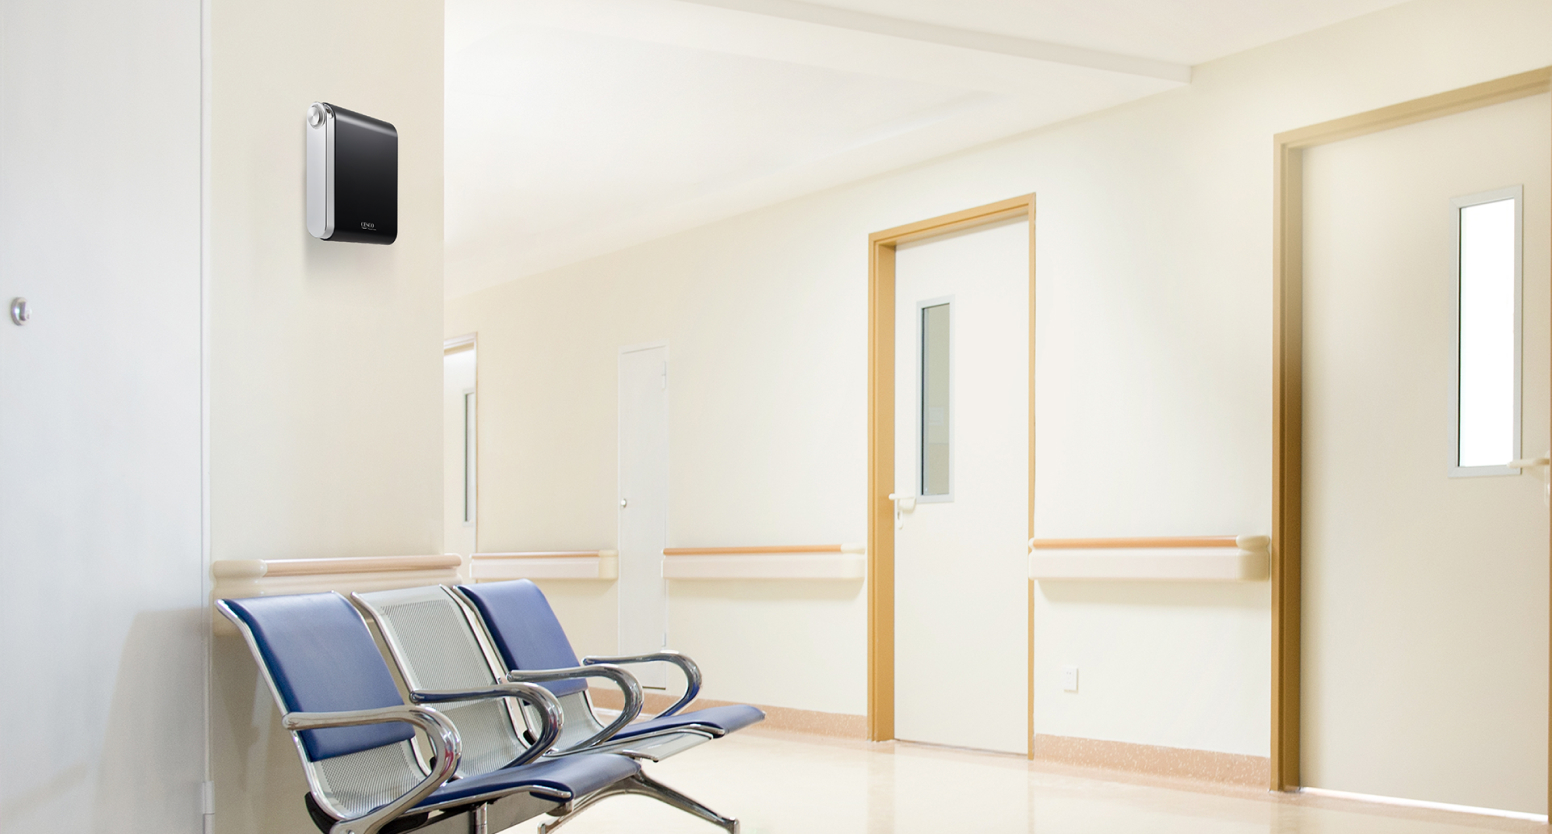 진료실과 같은 의료시설 내 벽면에 장소별 맞춤형 설계가 가능한 세스코(CESCO)의 공간 방향기 에어퍼퓸 제품이 설치되어 있고 하단에는 의자가 놓여있습니다.